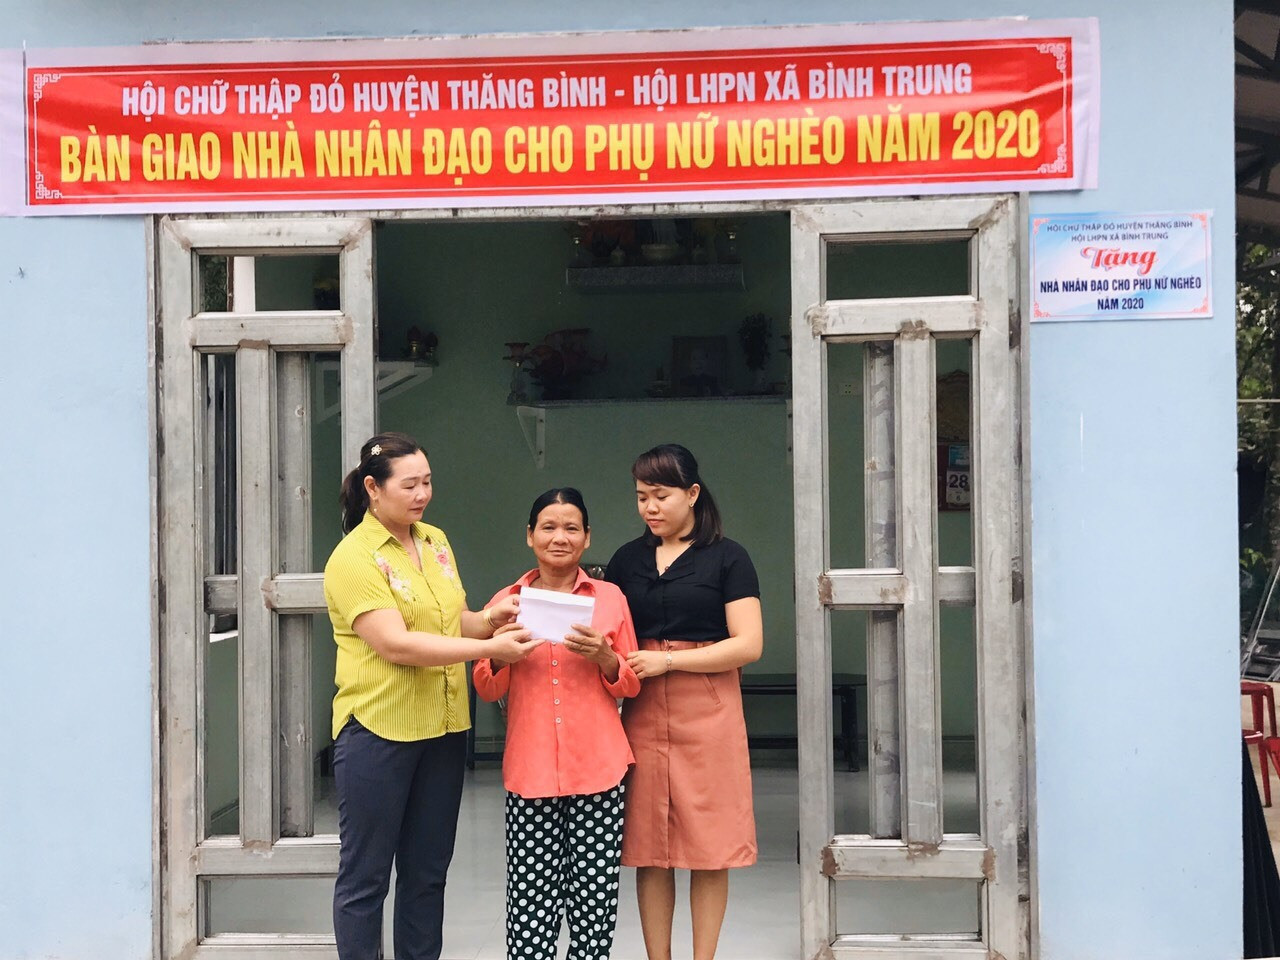 Hỗ trợ nhà cho các hộ nghèo của huyện Thăng Bình năm 2020.